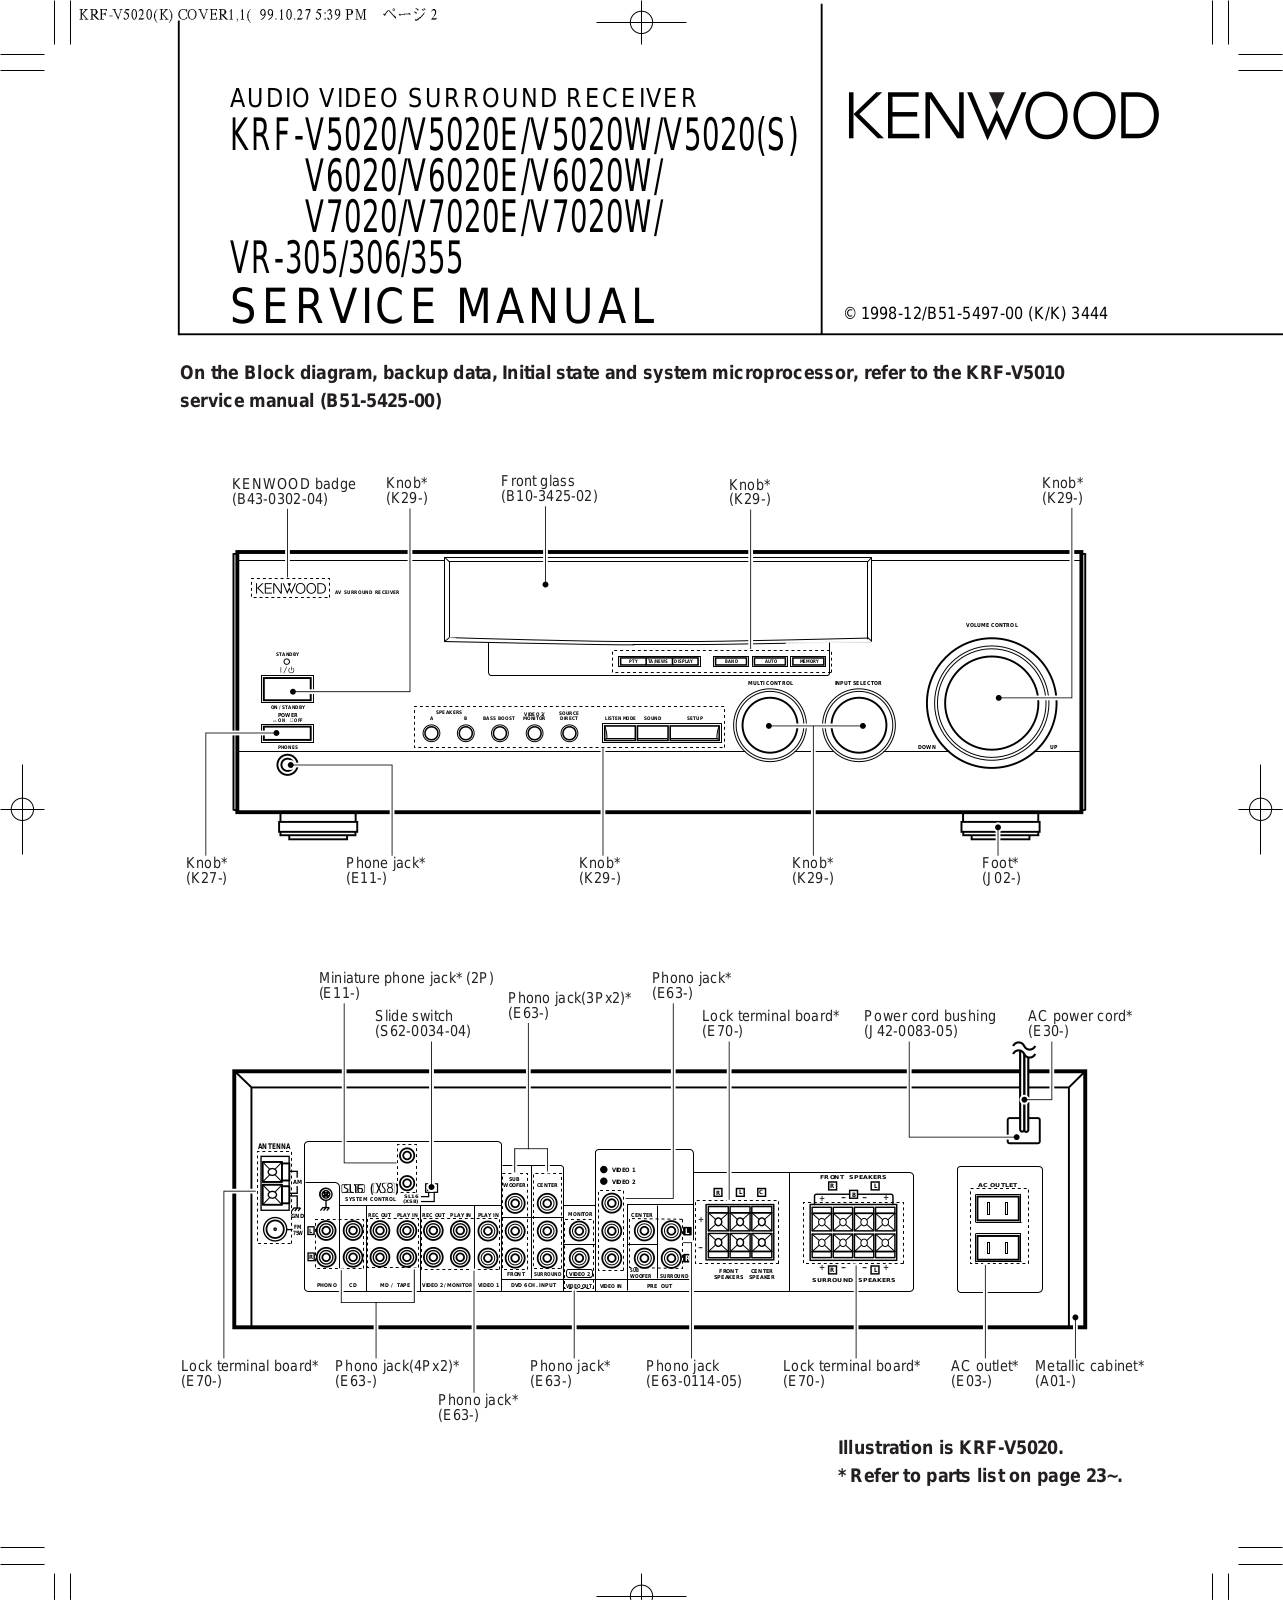 Kenwood KRFV-5020-E, KRFV-5020-S, KRFV-5020-W, KRFV-6020-E, KRFV-6020-W Service manual